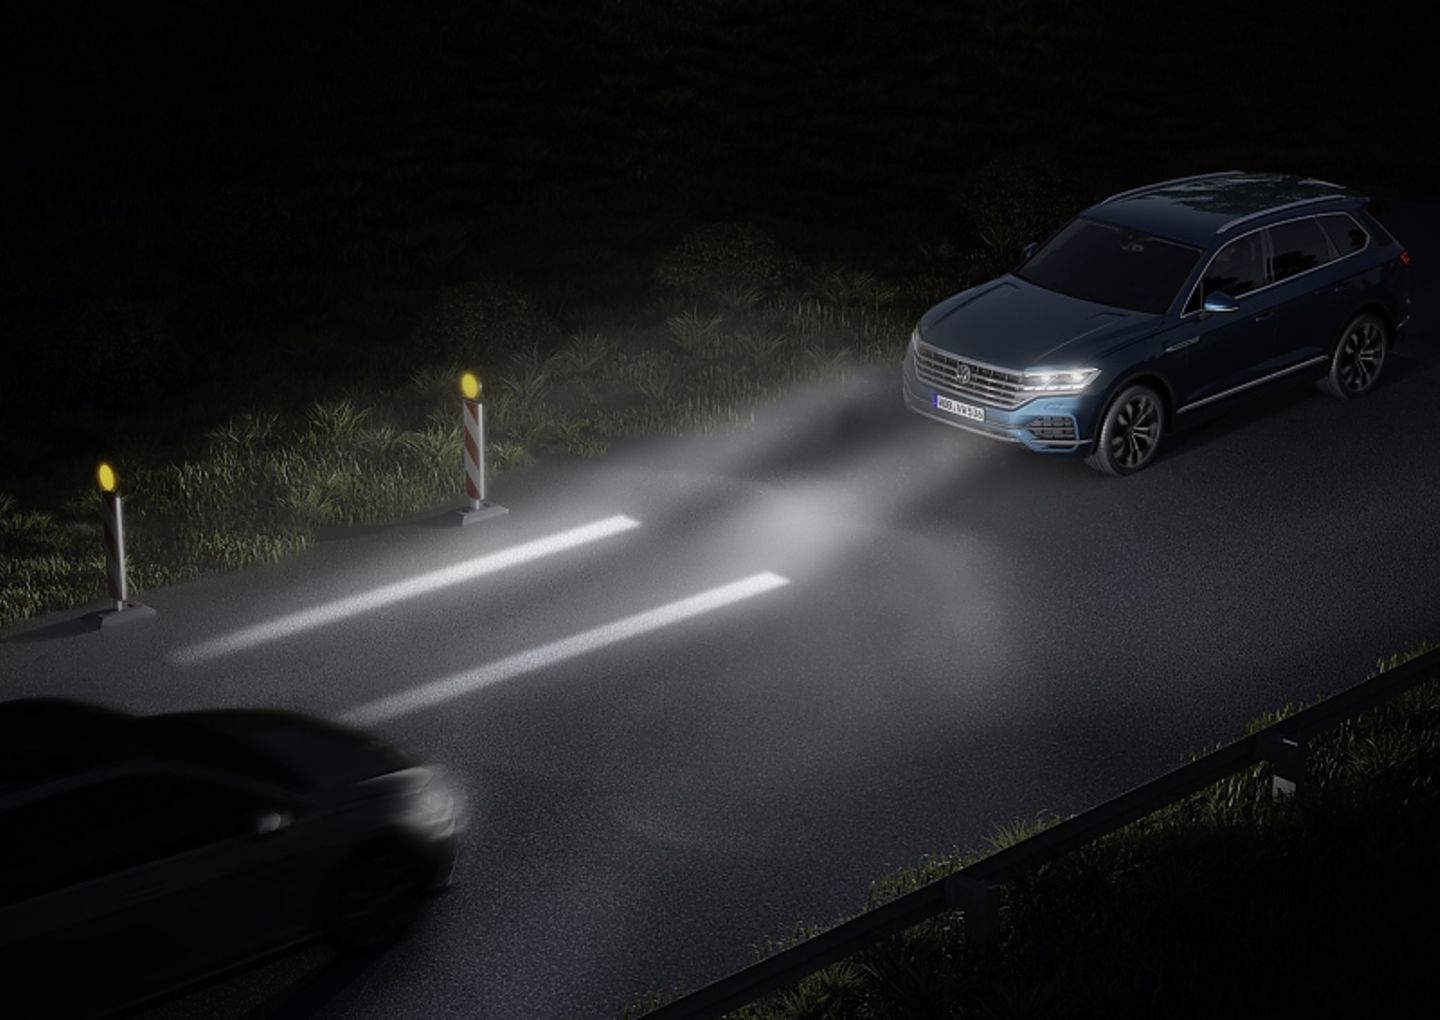 Die Straße ausleuchten: LED- vs. Xenon-Scheinwerfer erklärt